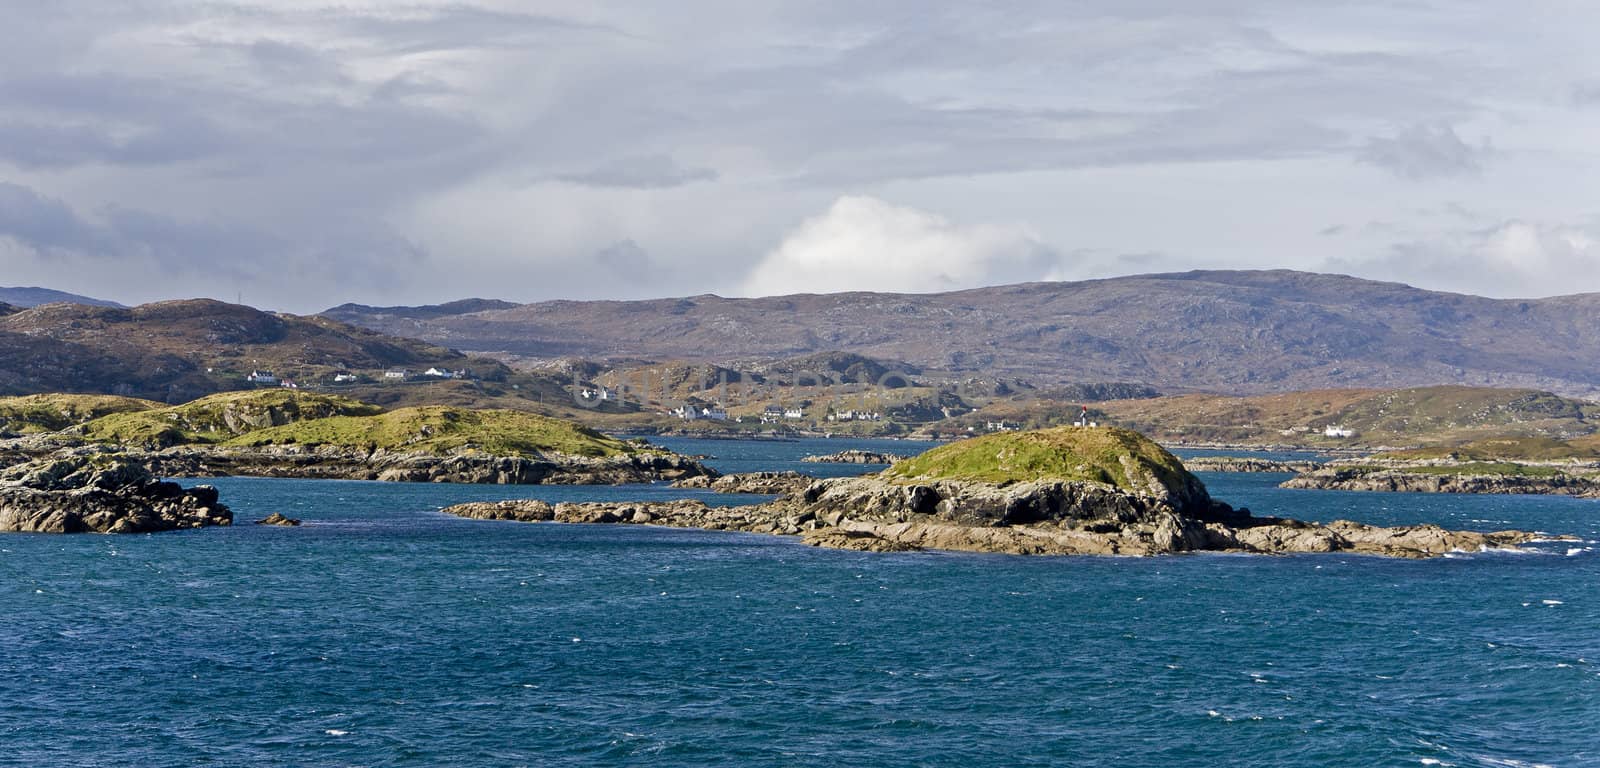 coastal landscape on scottish isle with wetland and hills